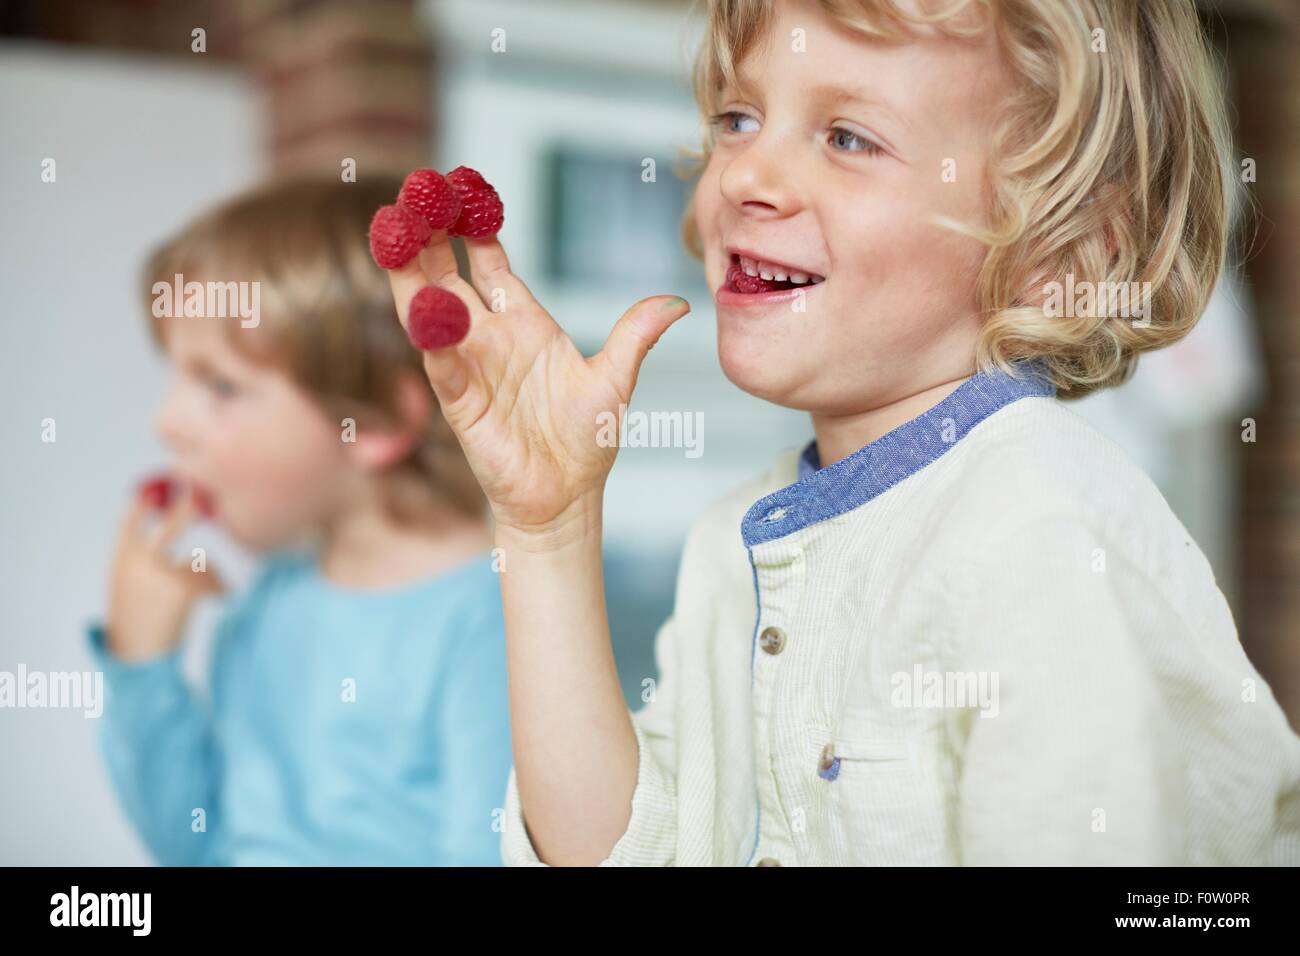 Deux garçons de manger les framboises au large de doigts Banque D'Images